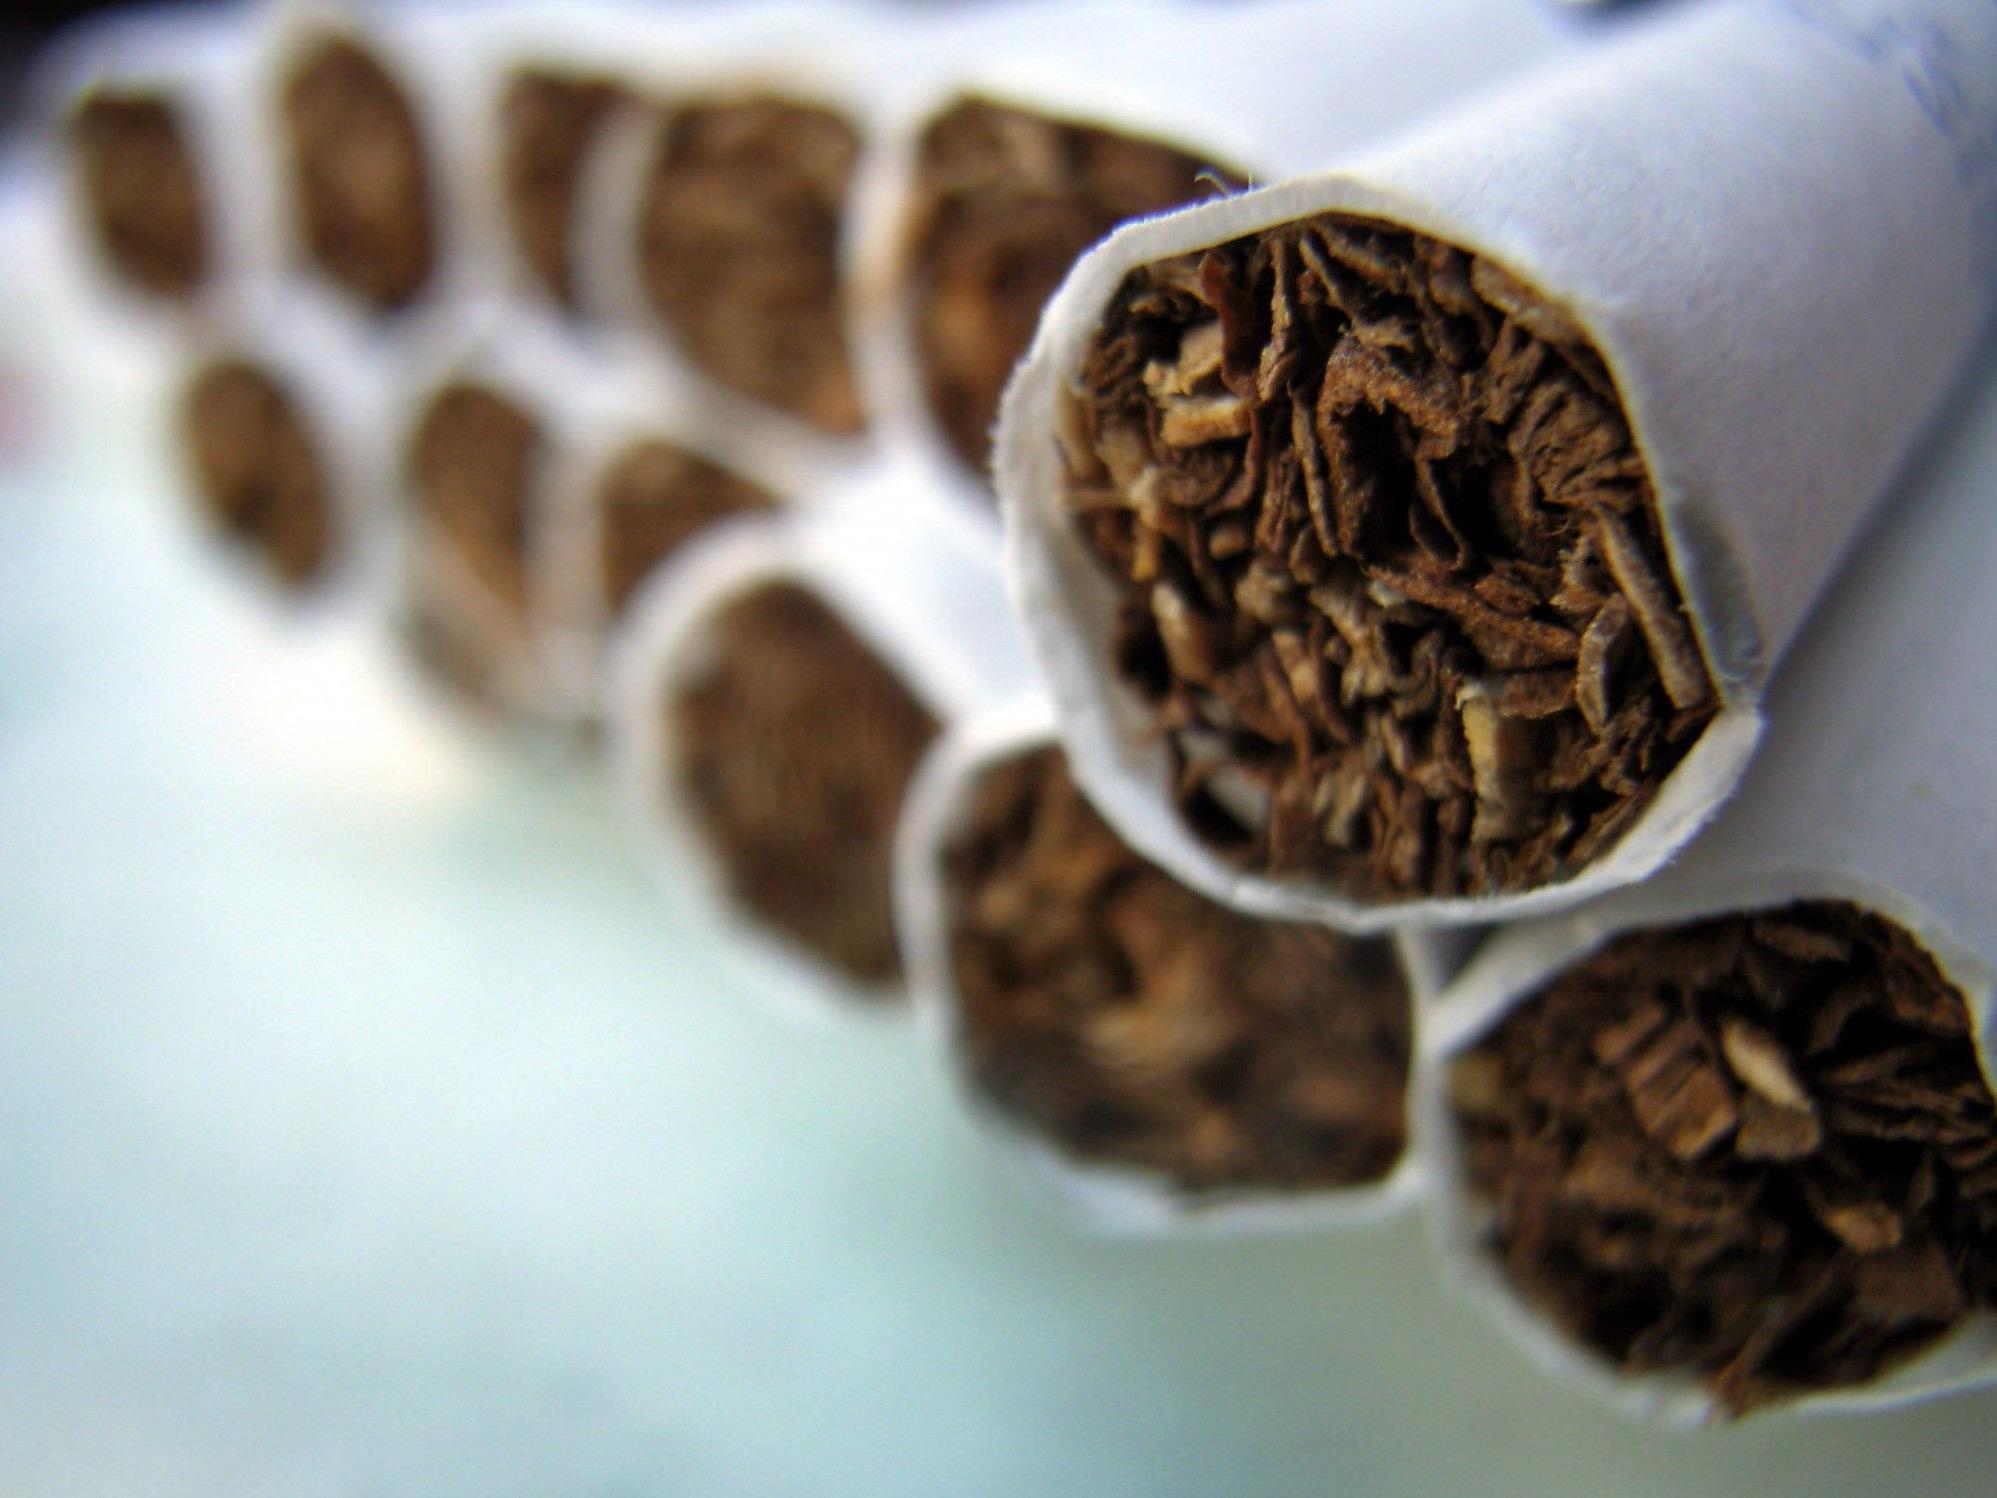 Änderung des Tabakmonopolgesetzes geplant